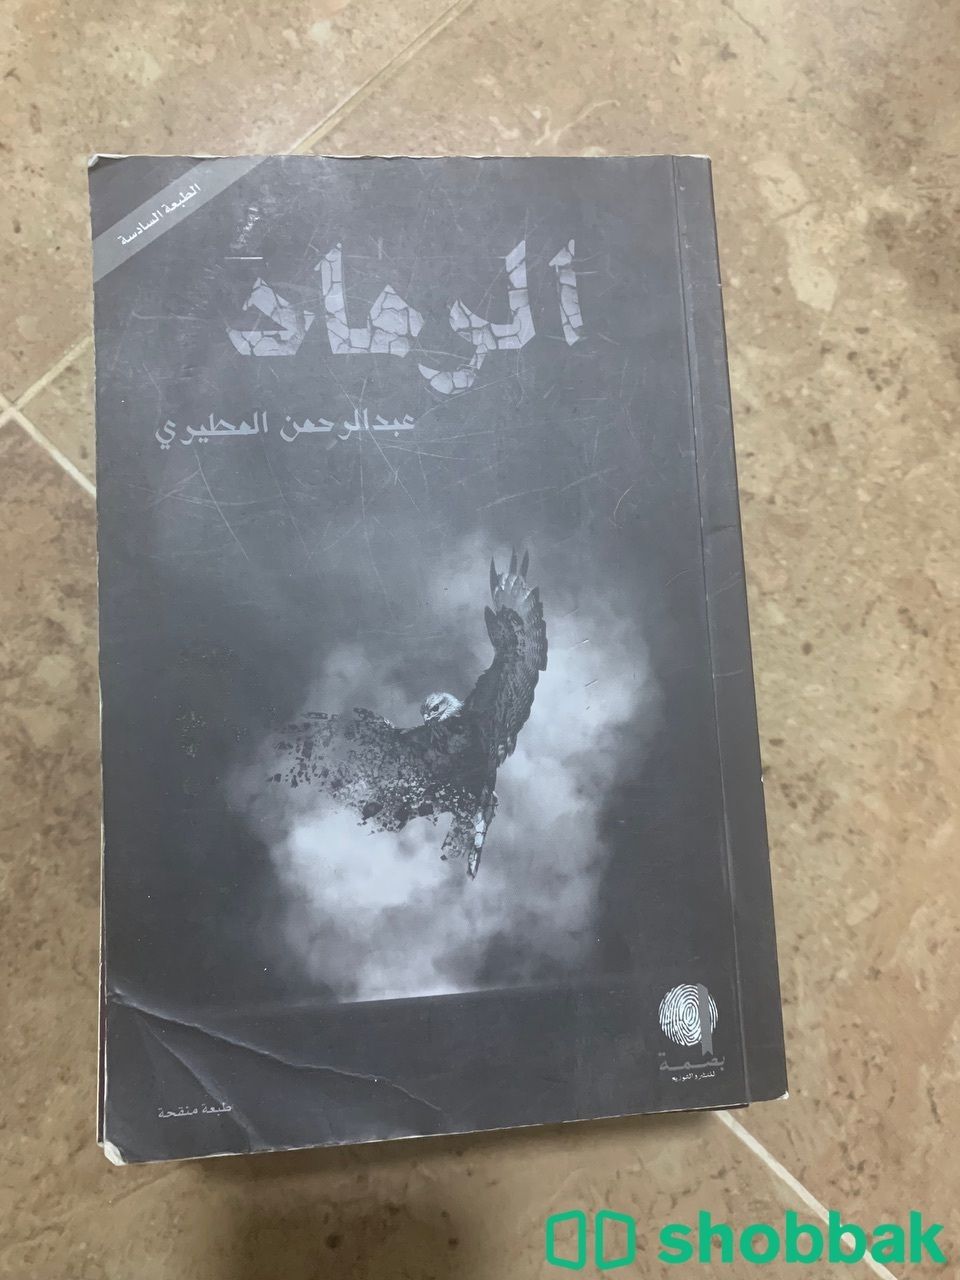 كتاب تثريب و مجموعة كتب  Shobbak Saudi Arabia